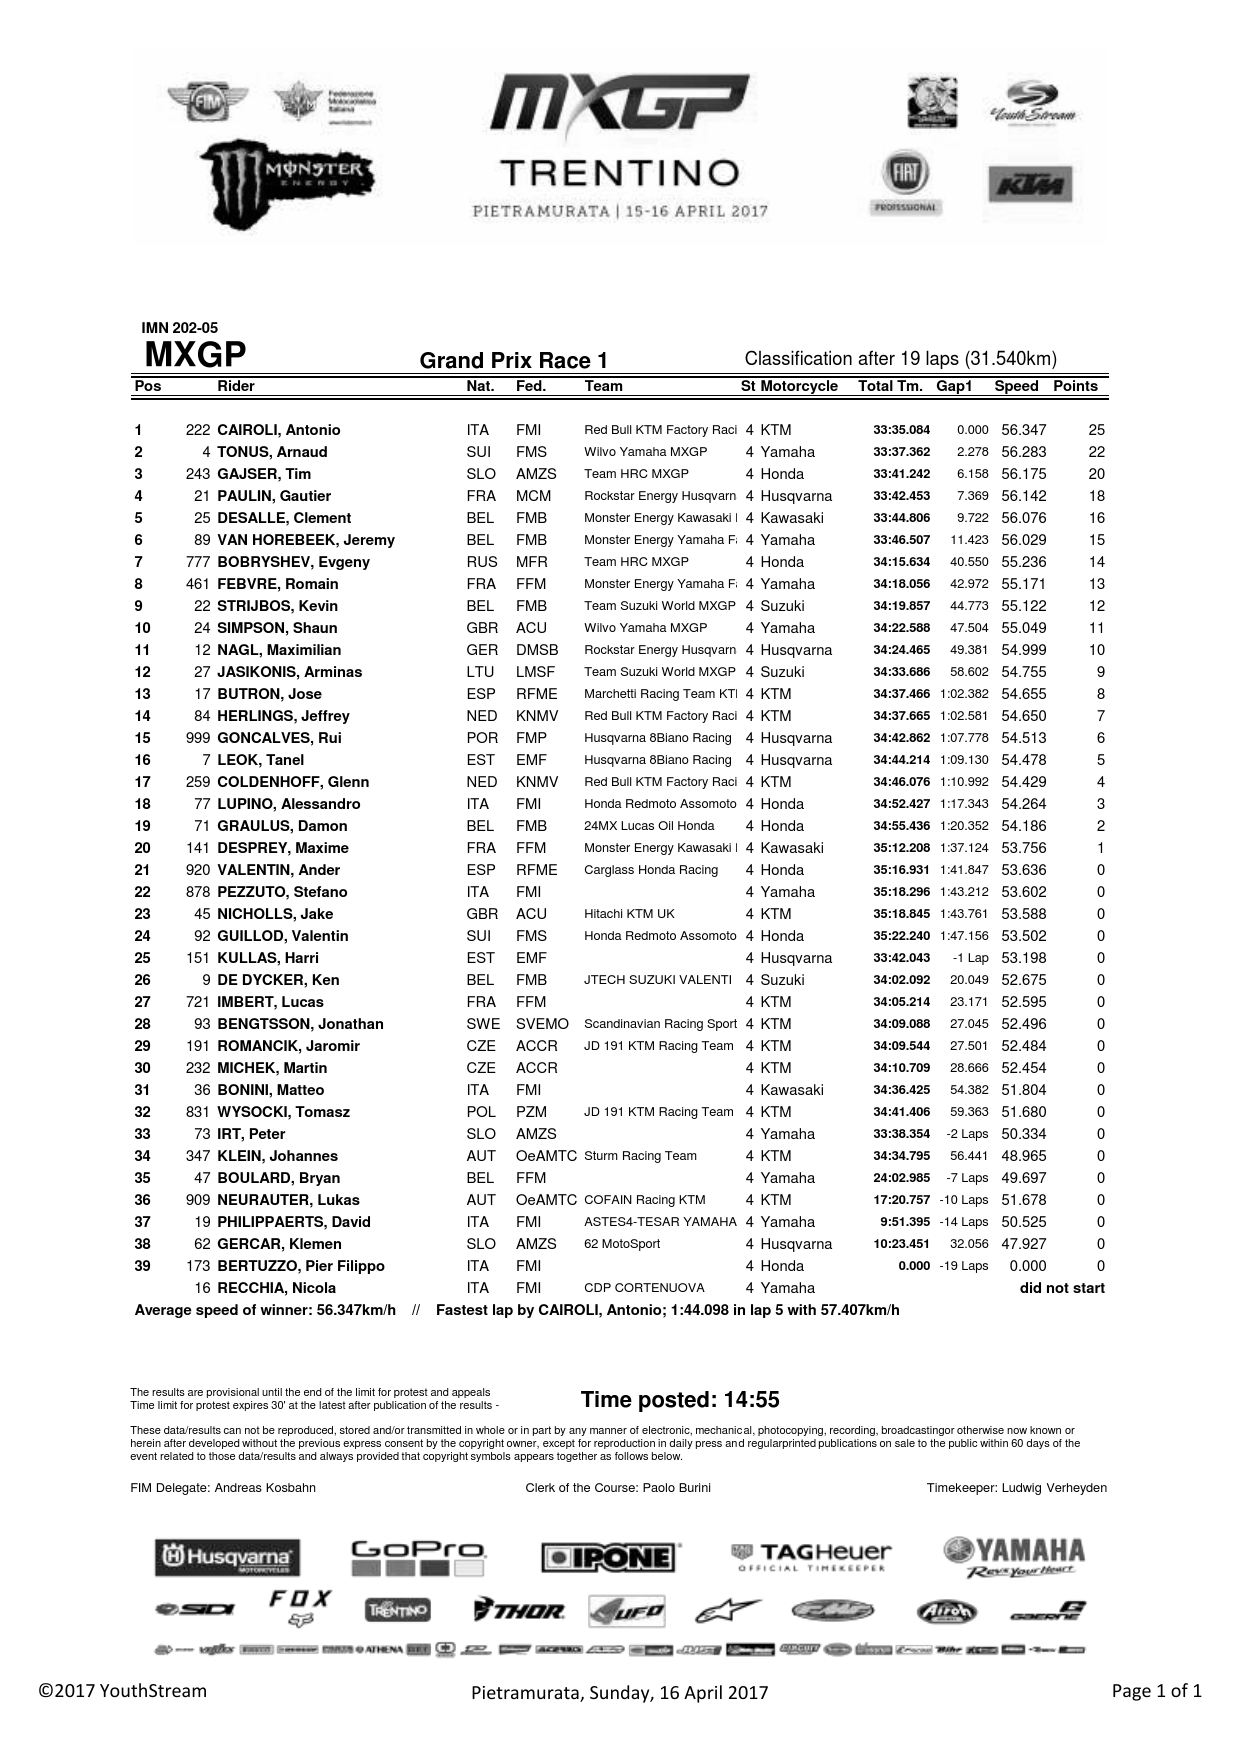 Результаты первого заезда Гран-При Трентино MXGP